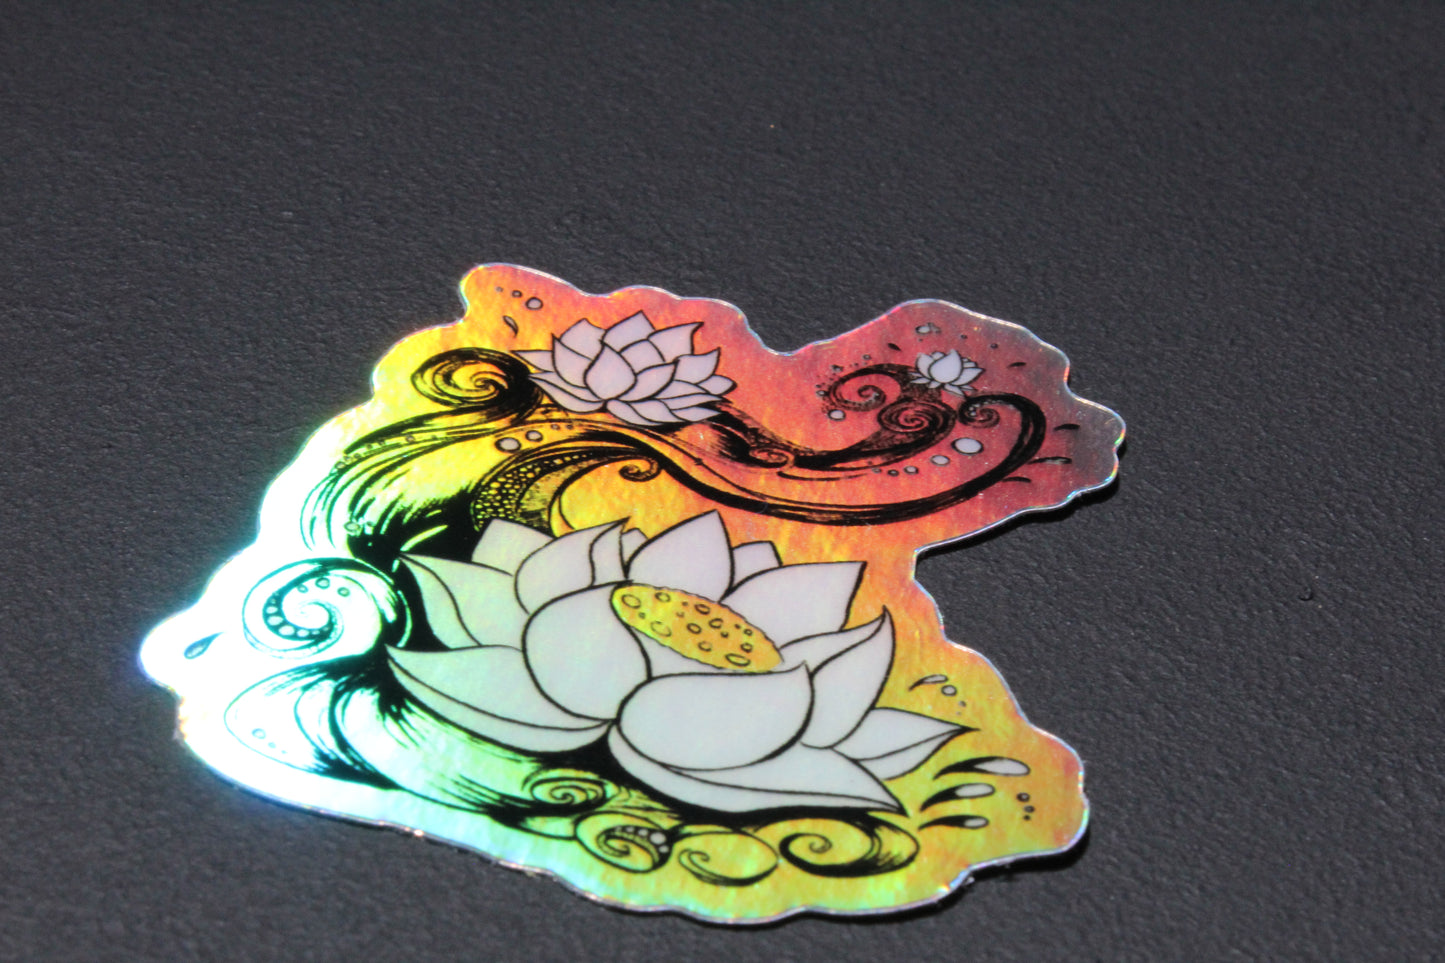 Holographic Lotus 2" x 2" Vinyl Stickers